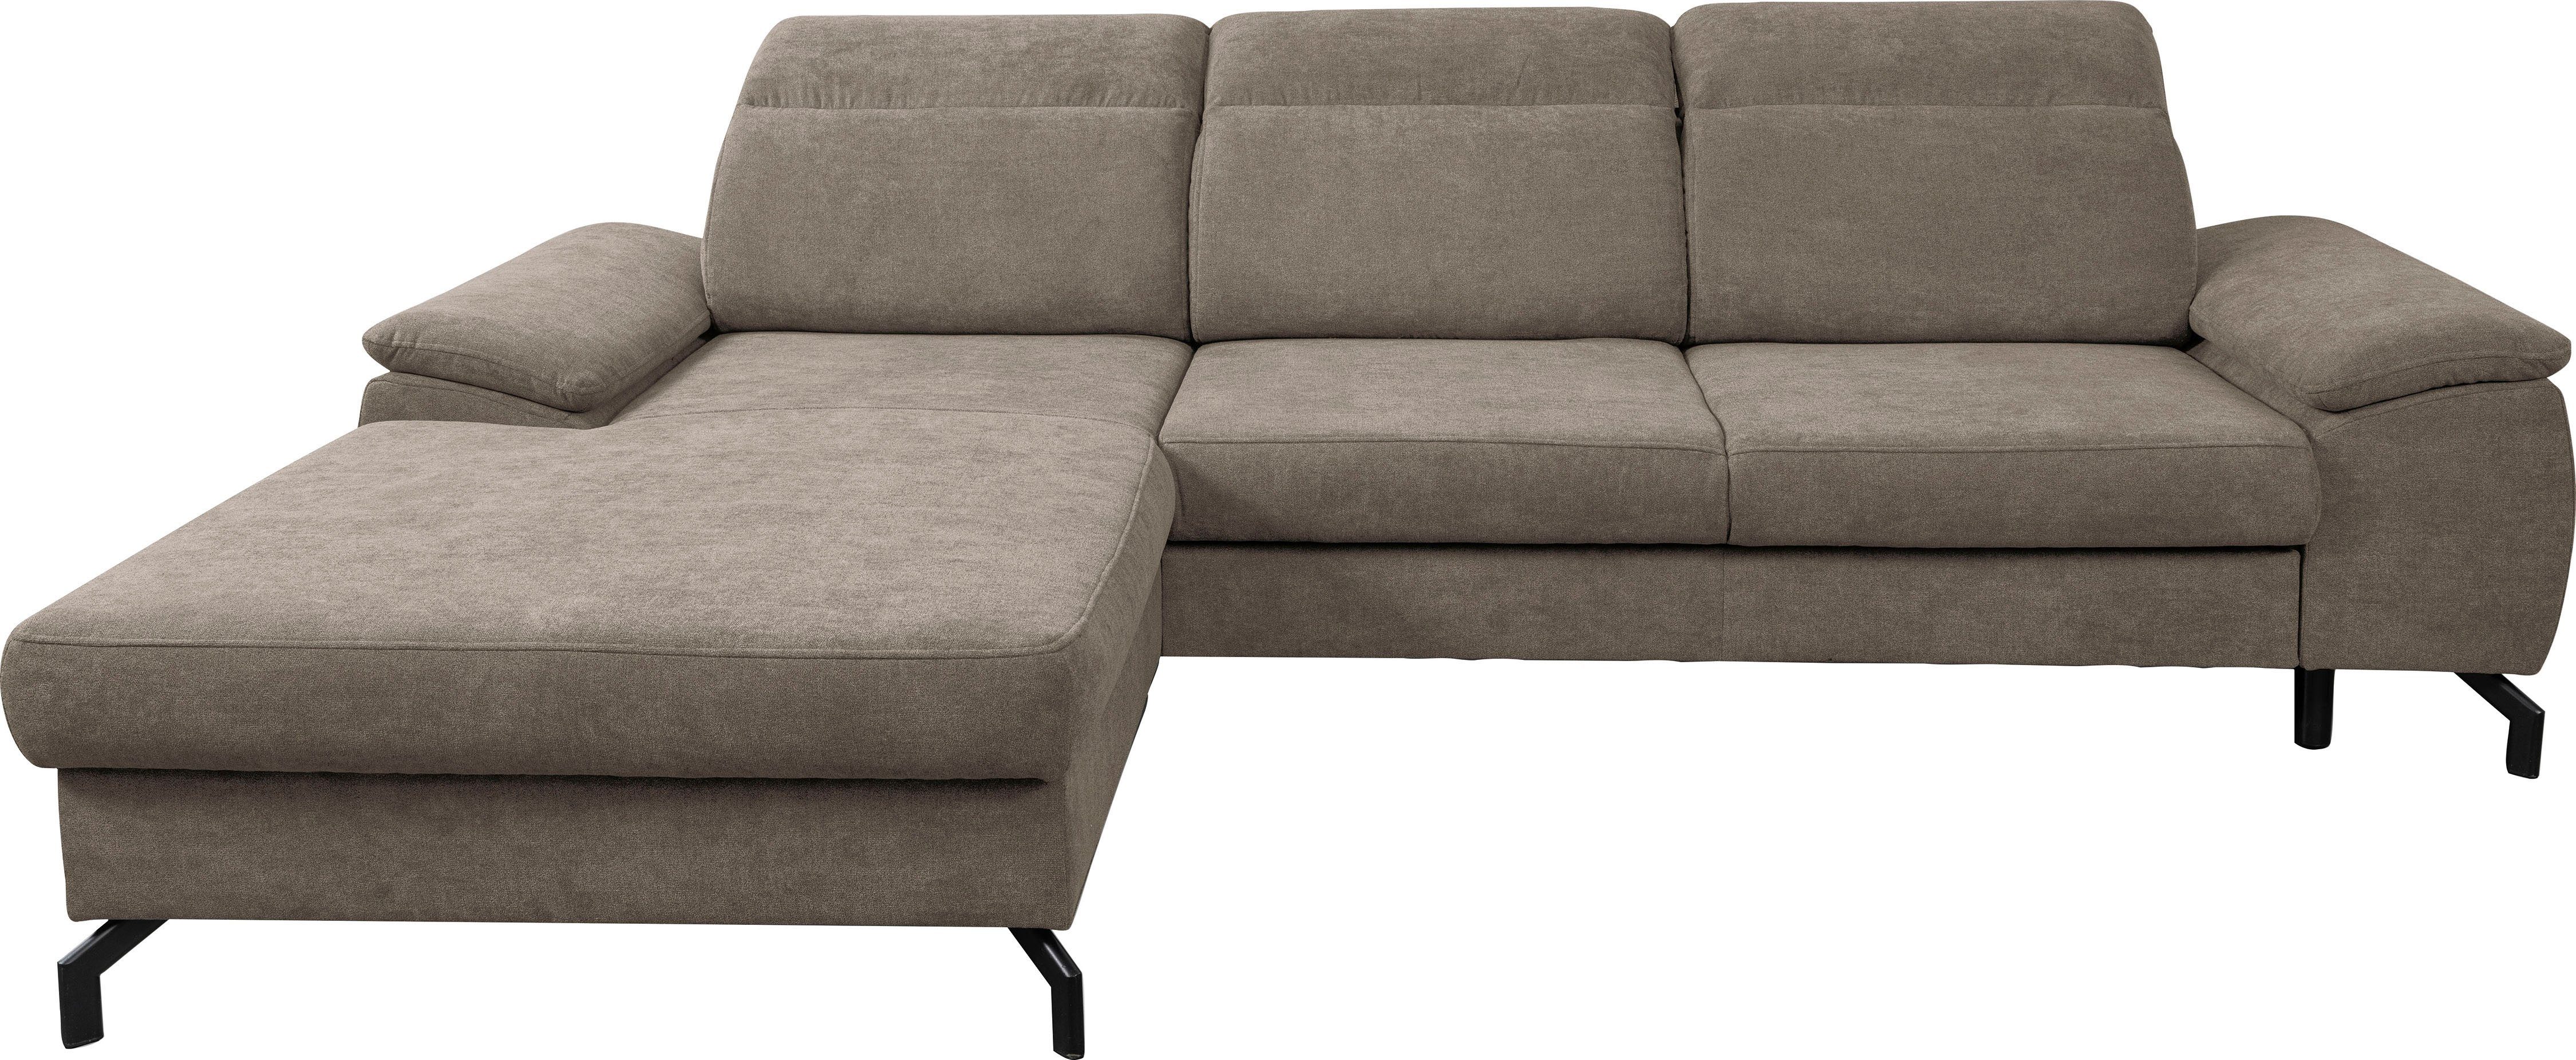 WERK2 Ecksofa Panama, Modernes Sofa mit Schlaffunktion, Bettkasten, Kopfteile verstellbar Beige | Beige | Beige